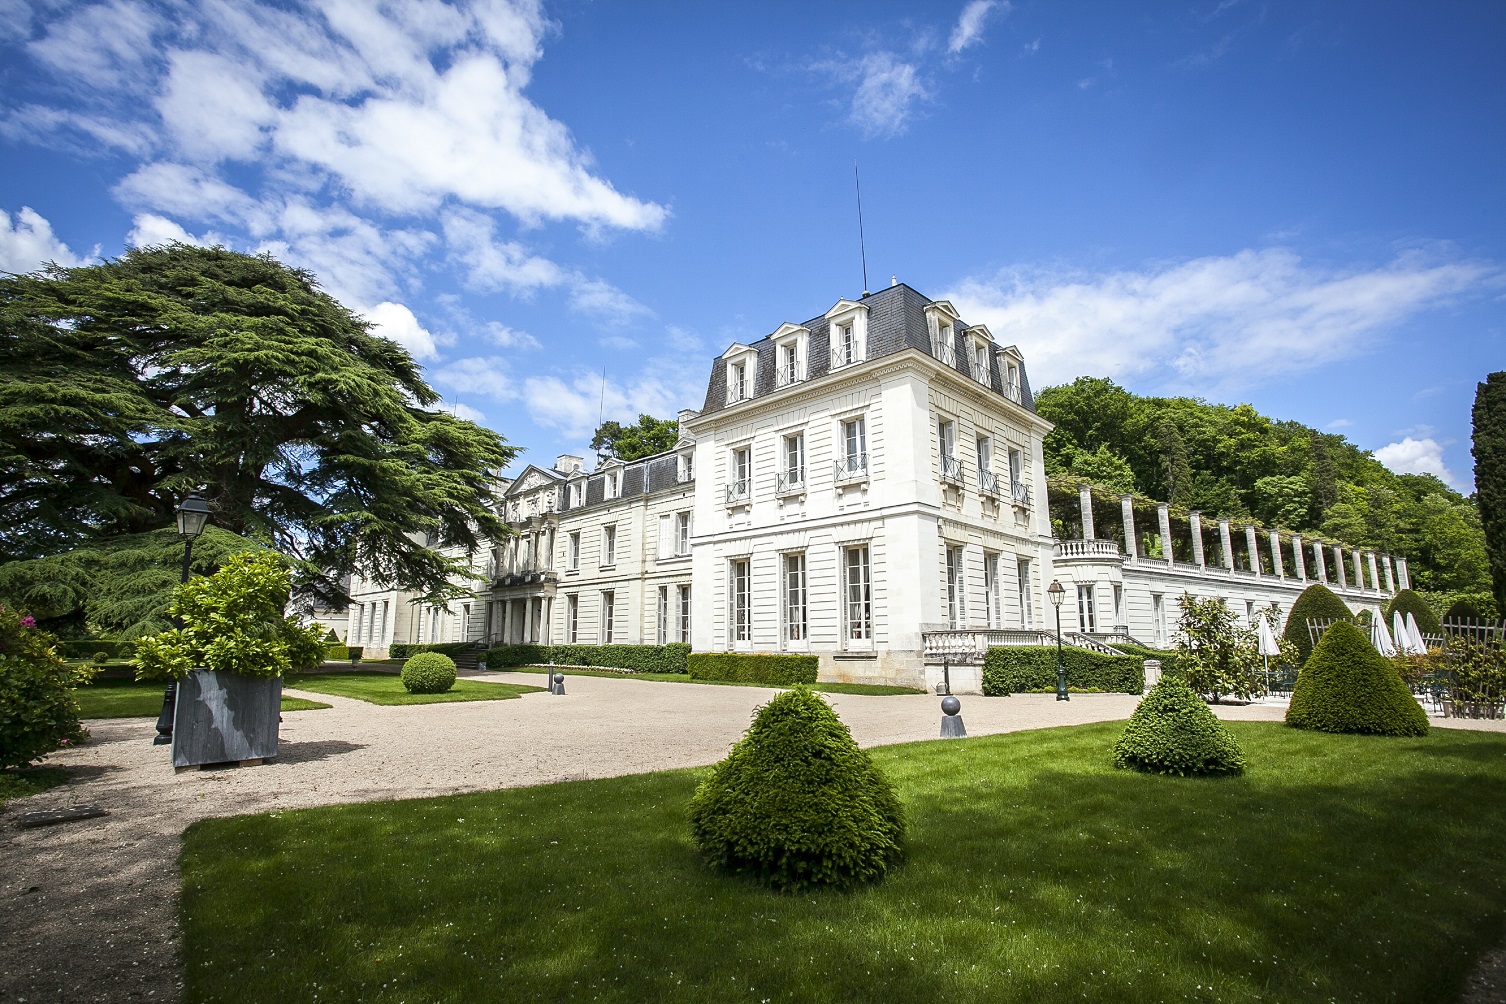 C’est le château de Rochecotte. Construit au 18e siècle il est conçu dans un style empire et a appartenu à la Duchesse de Dino, nièce du prince de Talleyrand qui en a fait un somptueux palais inspiré des villas italiennes.